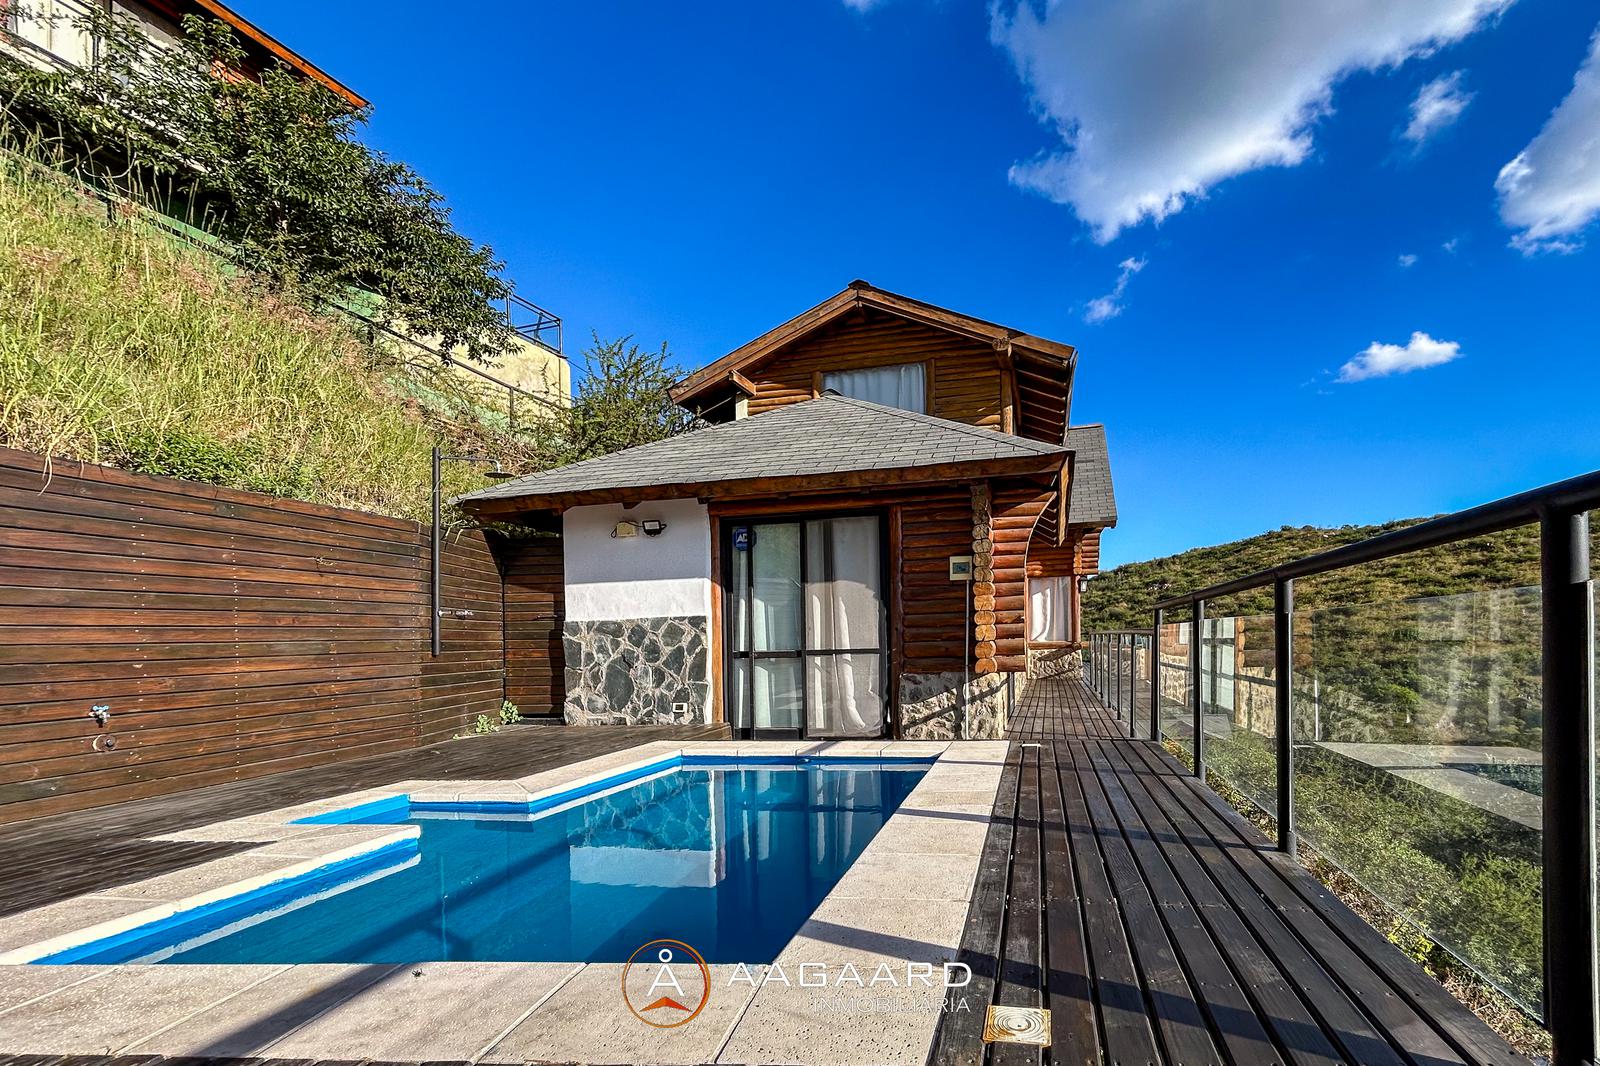 #5021399 | Sale | Horizontal Property | La Cuesta Villa Residencial (AAGAARD INMOBILIARIA)